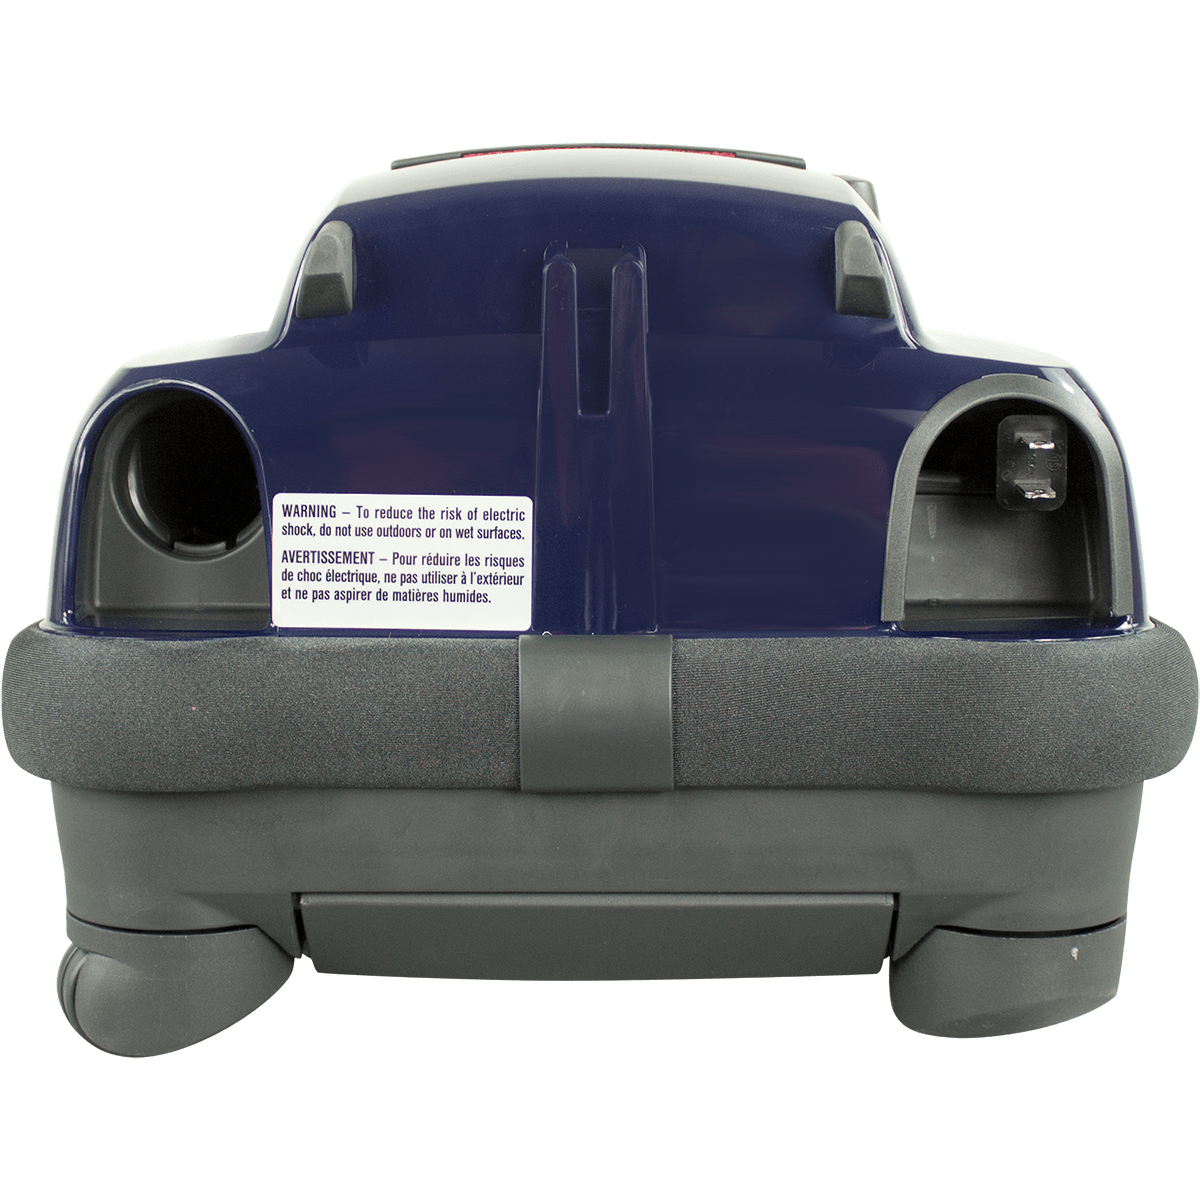 SEBO AIRBELT K2 KOMBI Canister Vacuum Cleaner - Dark Blue